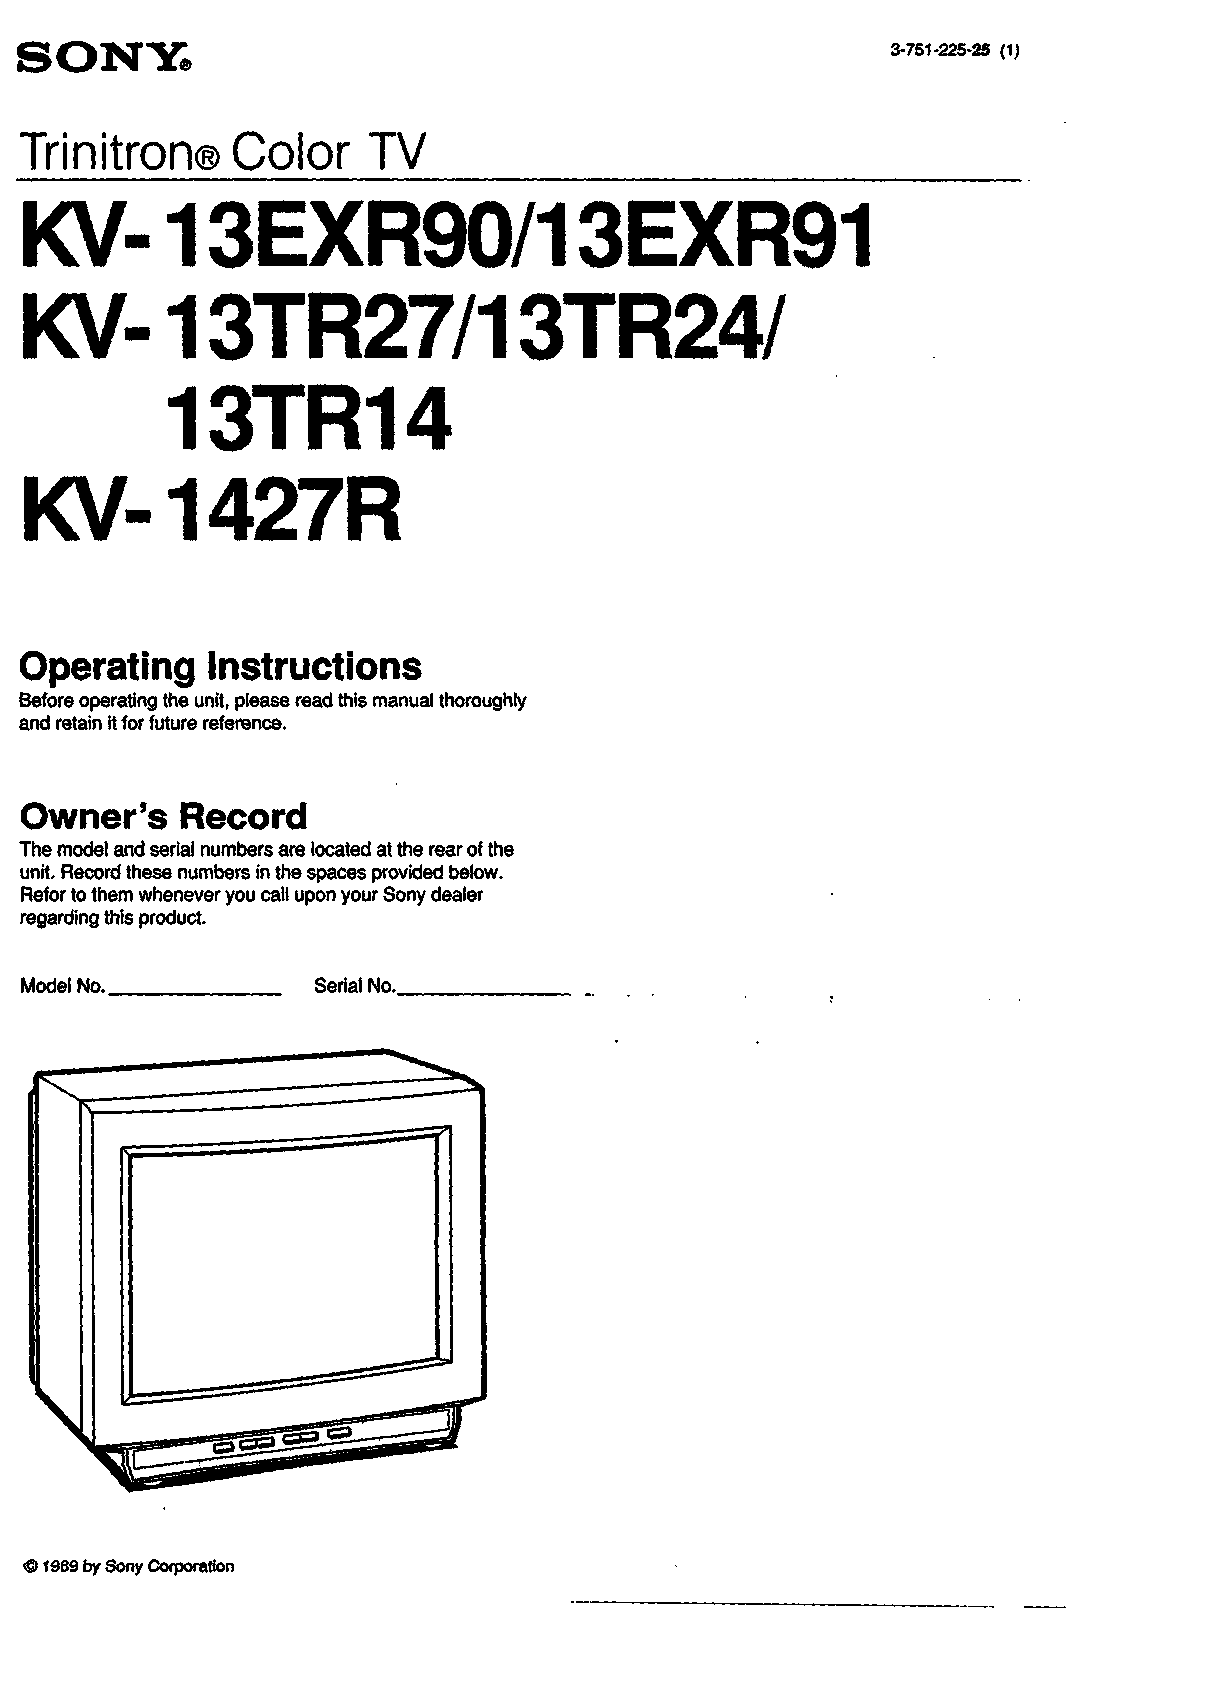 Sony KV-13EXR91, KV-13EXR90, KV-13TR14, KV-13TR27, KV-1427R User Manual